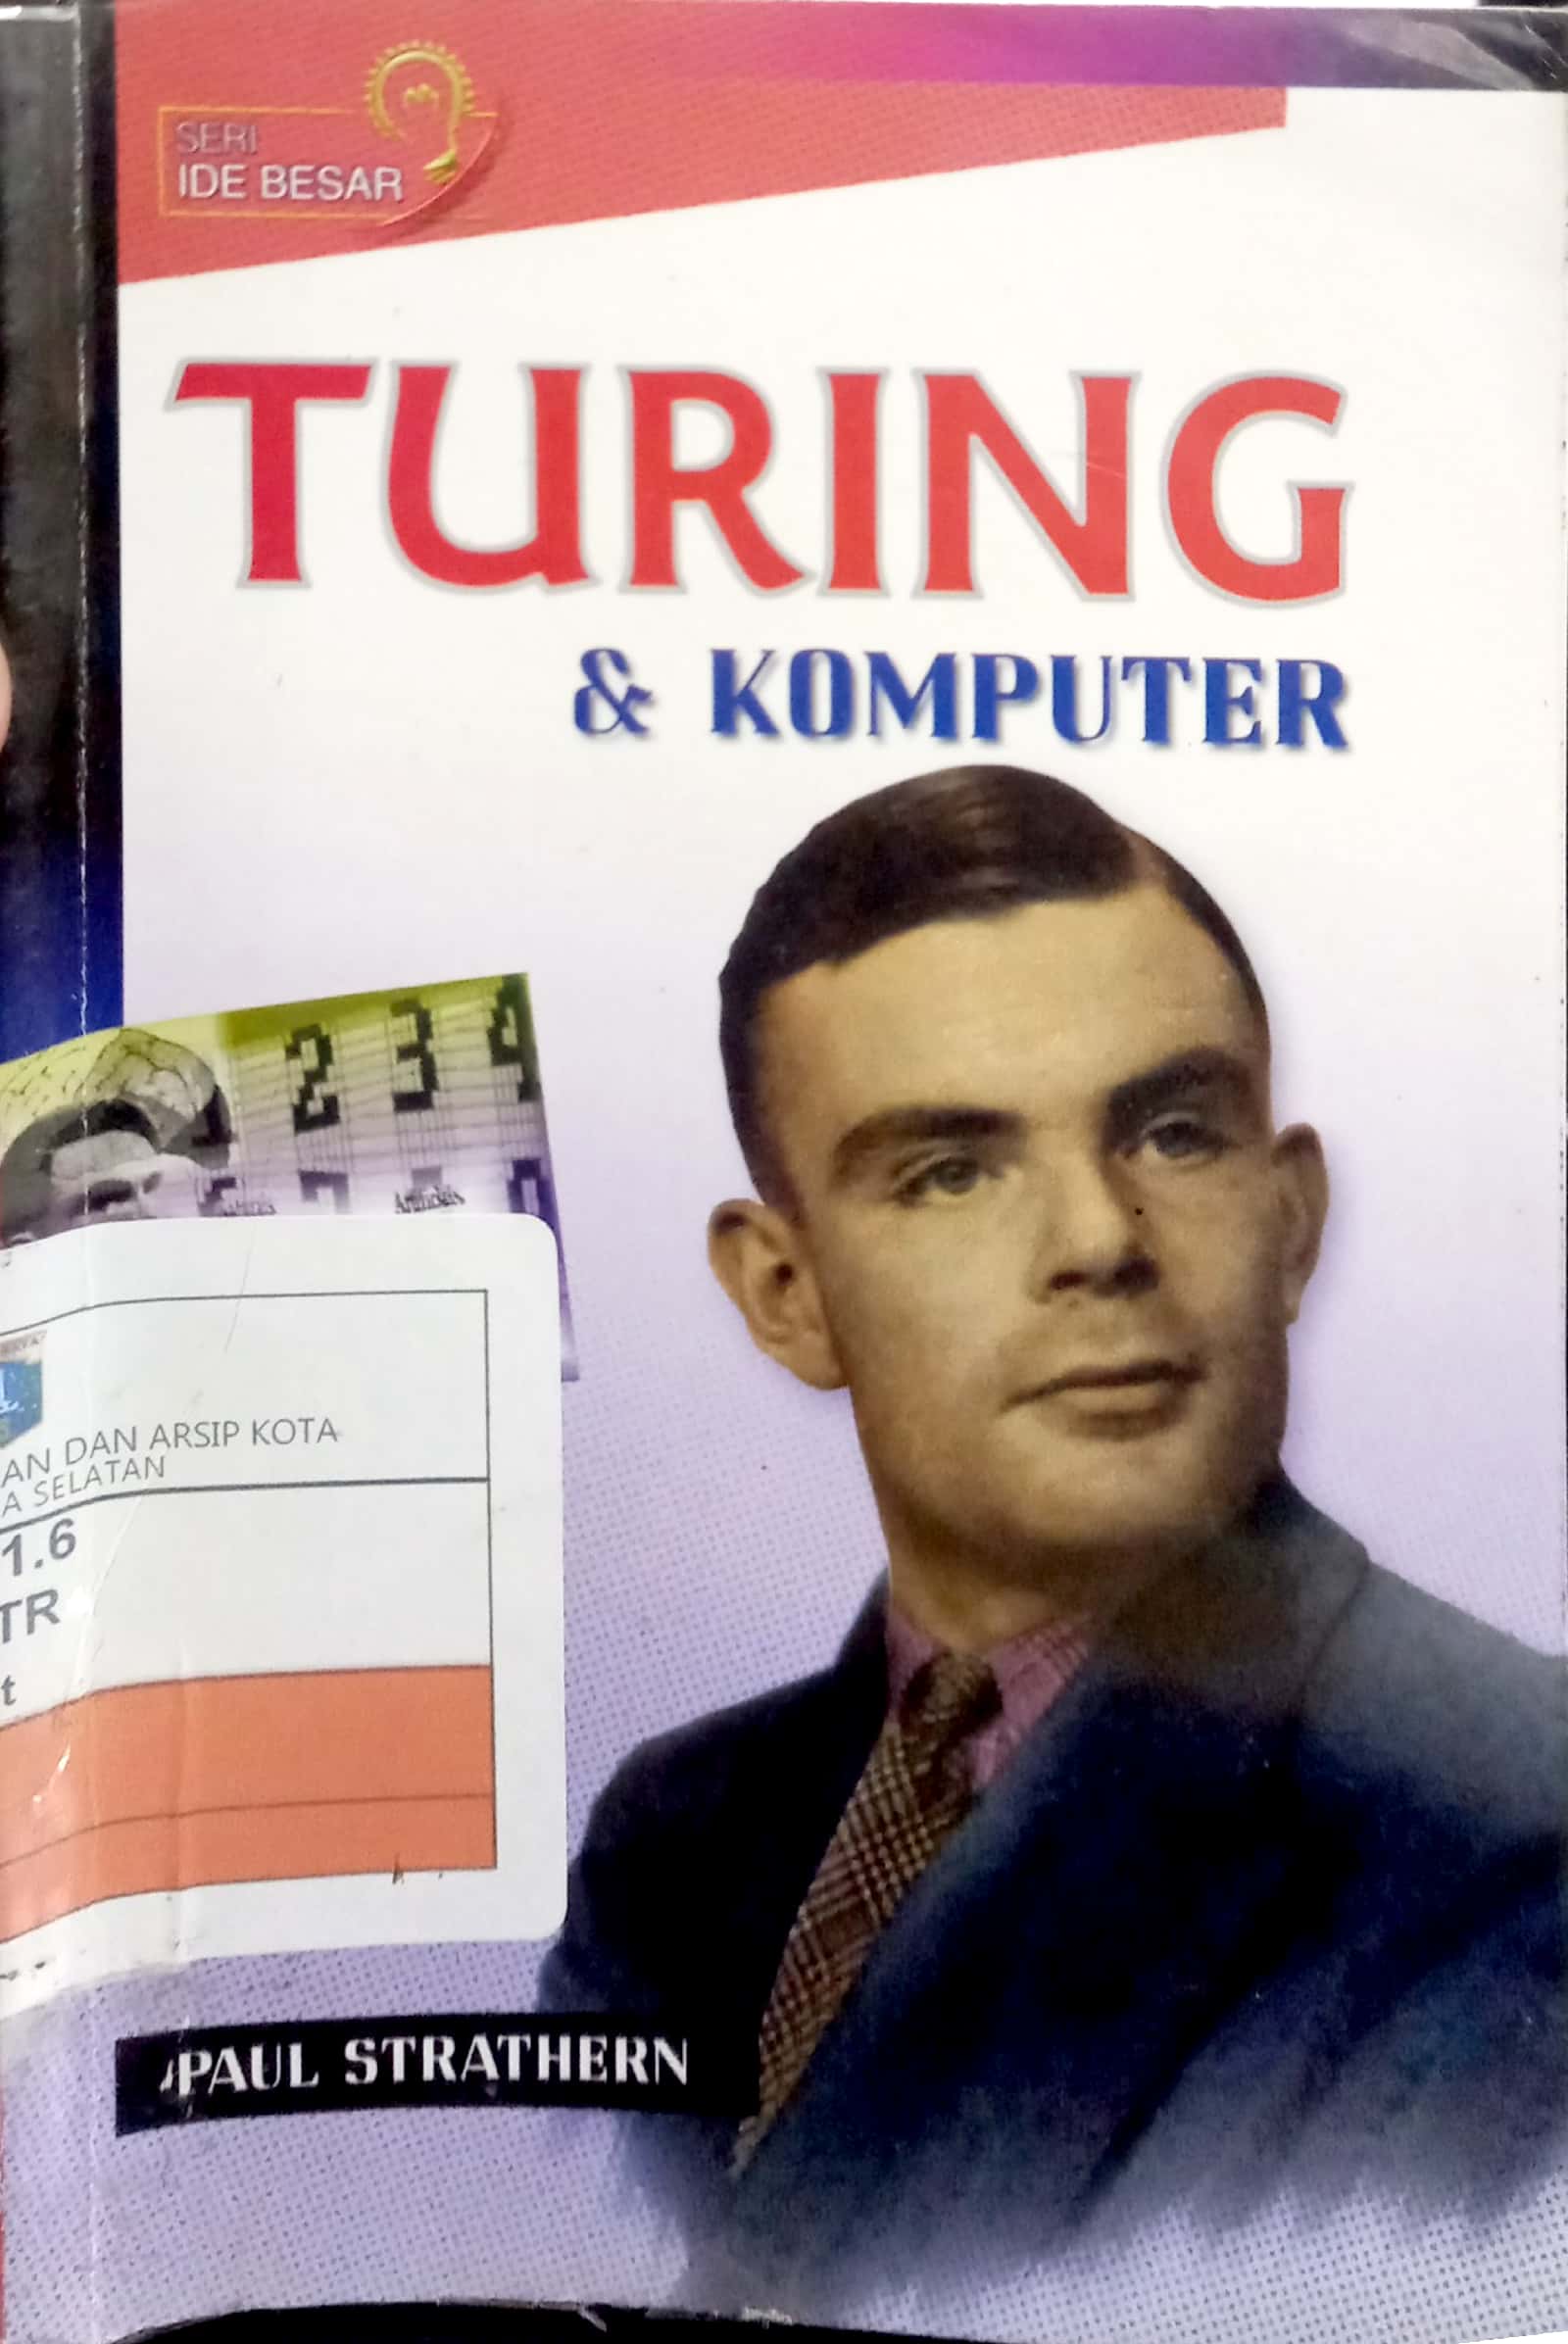 Turing & komputer